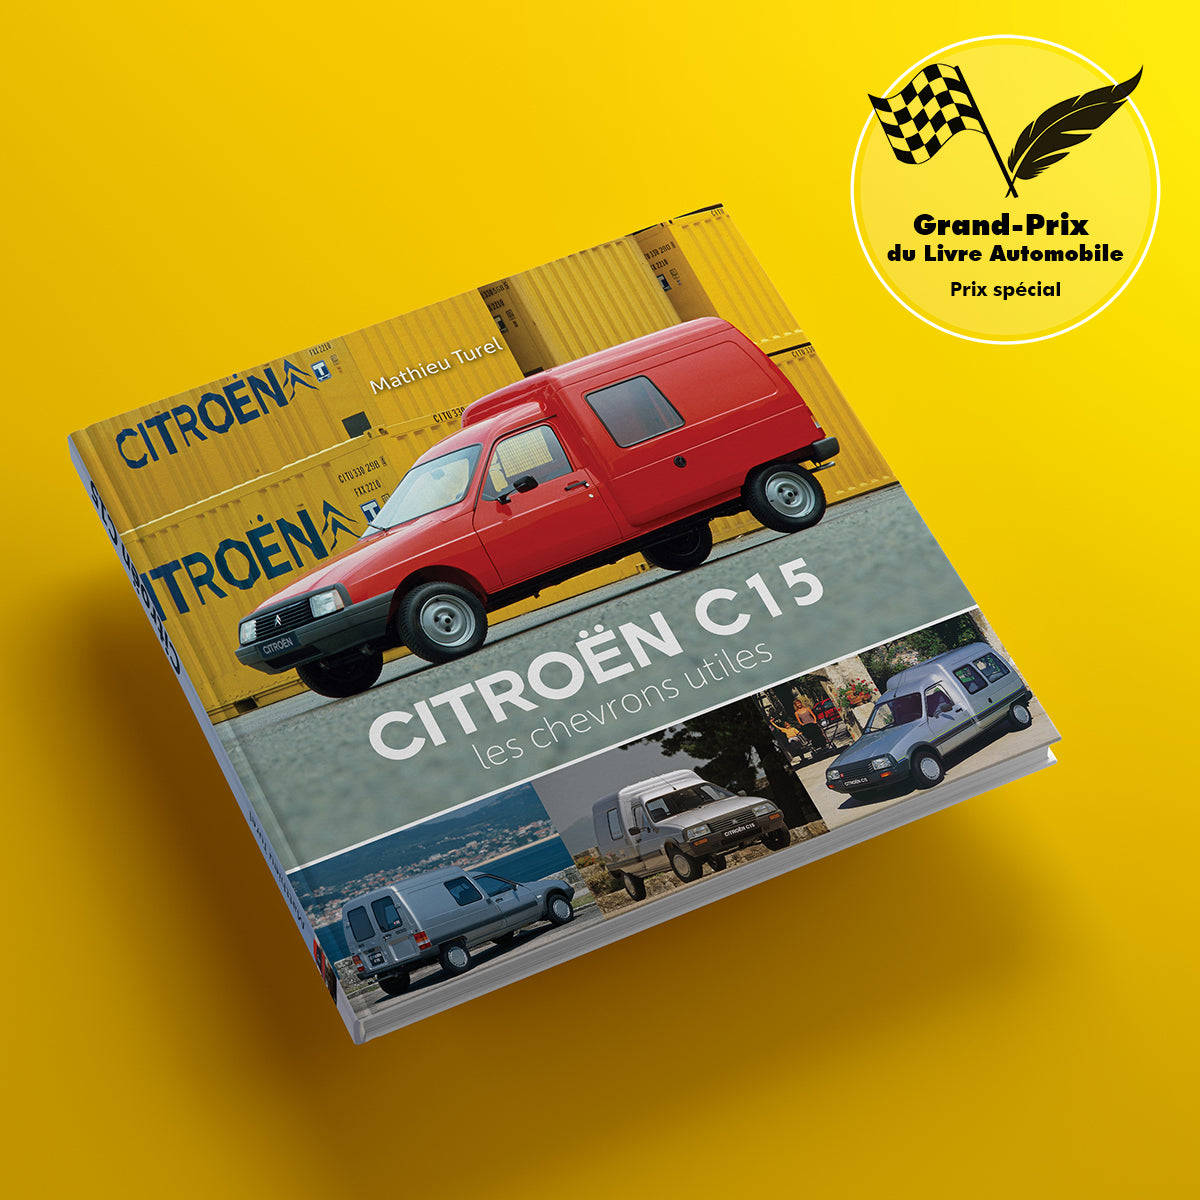 Citroën C15, les chevrons utiles – citrovisie